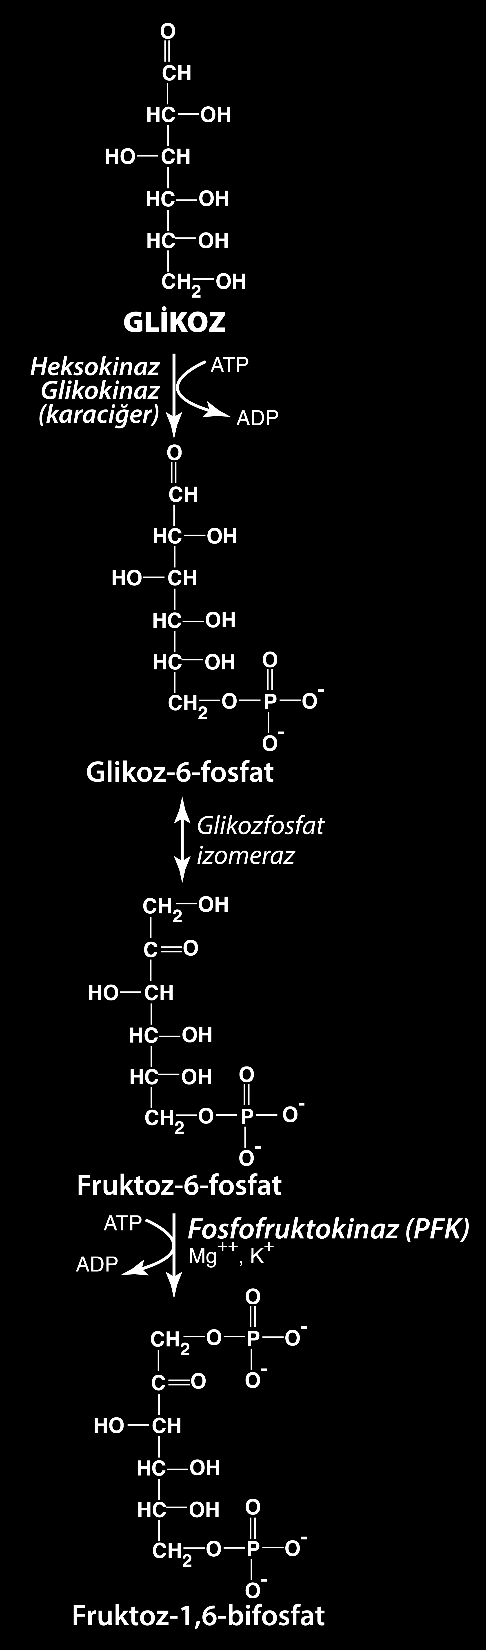 Anaerobik Glikoliz; İlk Reaksiyonlar Yaşayan birçok prokaryotik ve ökaryotik canlıda glikolitik yolun ilk reaksiyonları ortakdır ve bu reaksiyonlar hücrelerin canlılığı için çok önemlidir.